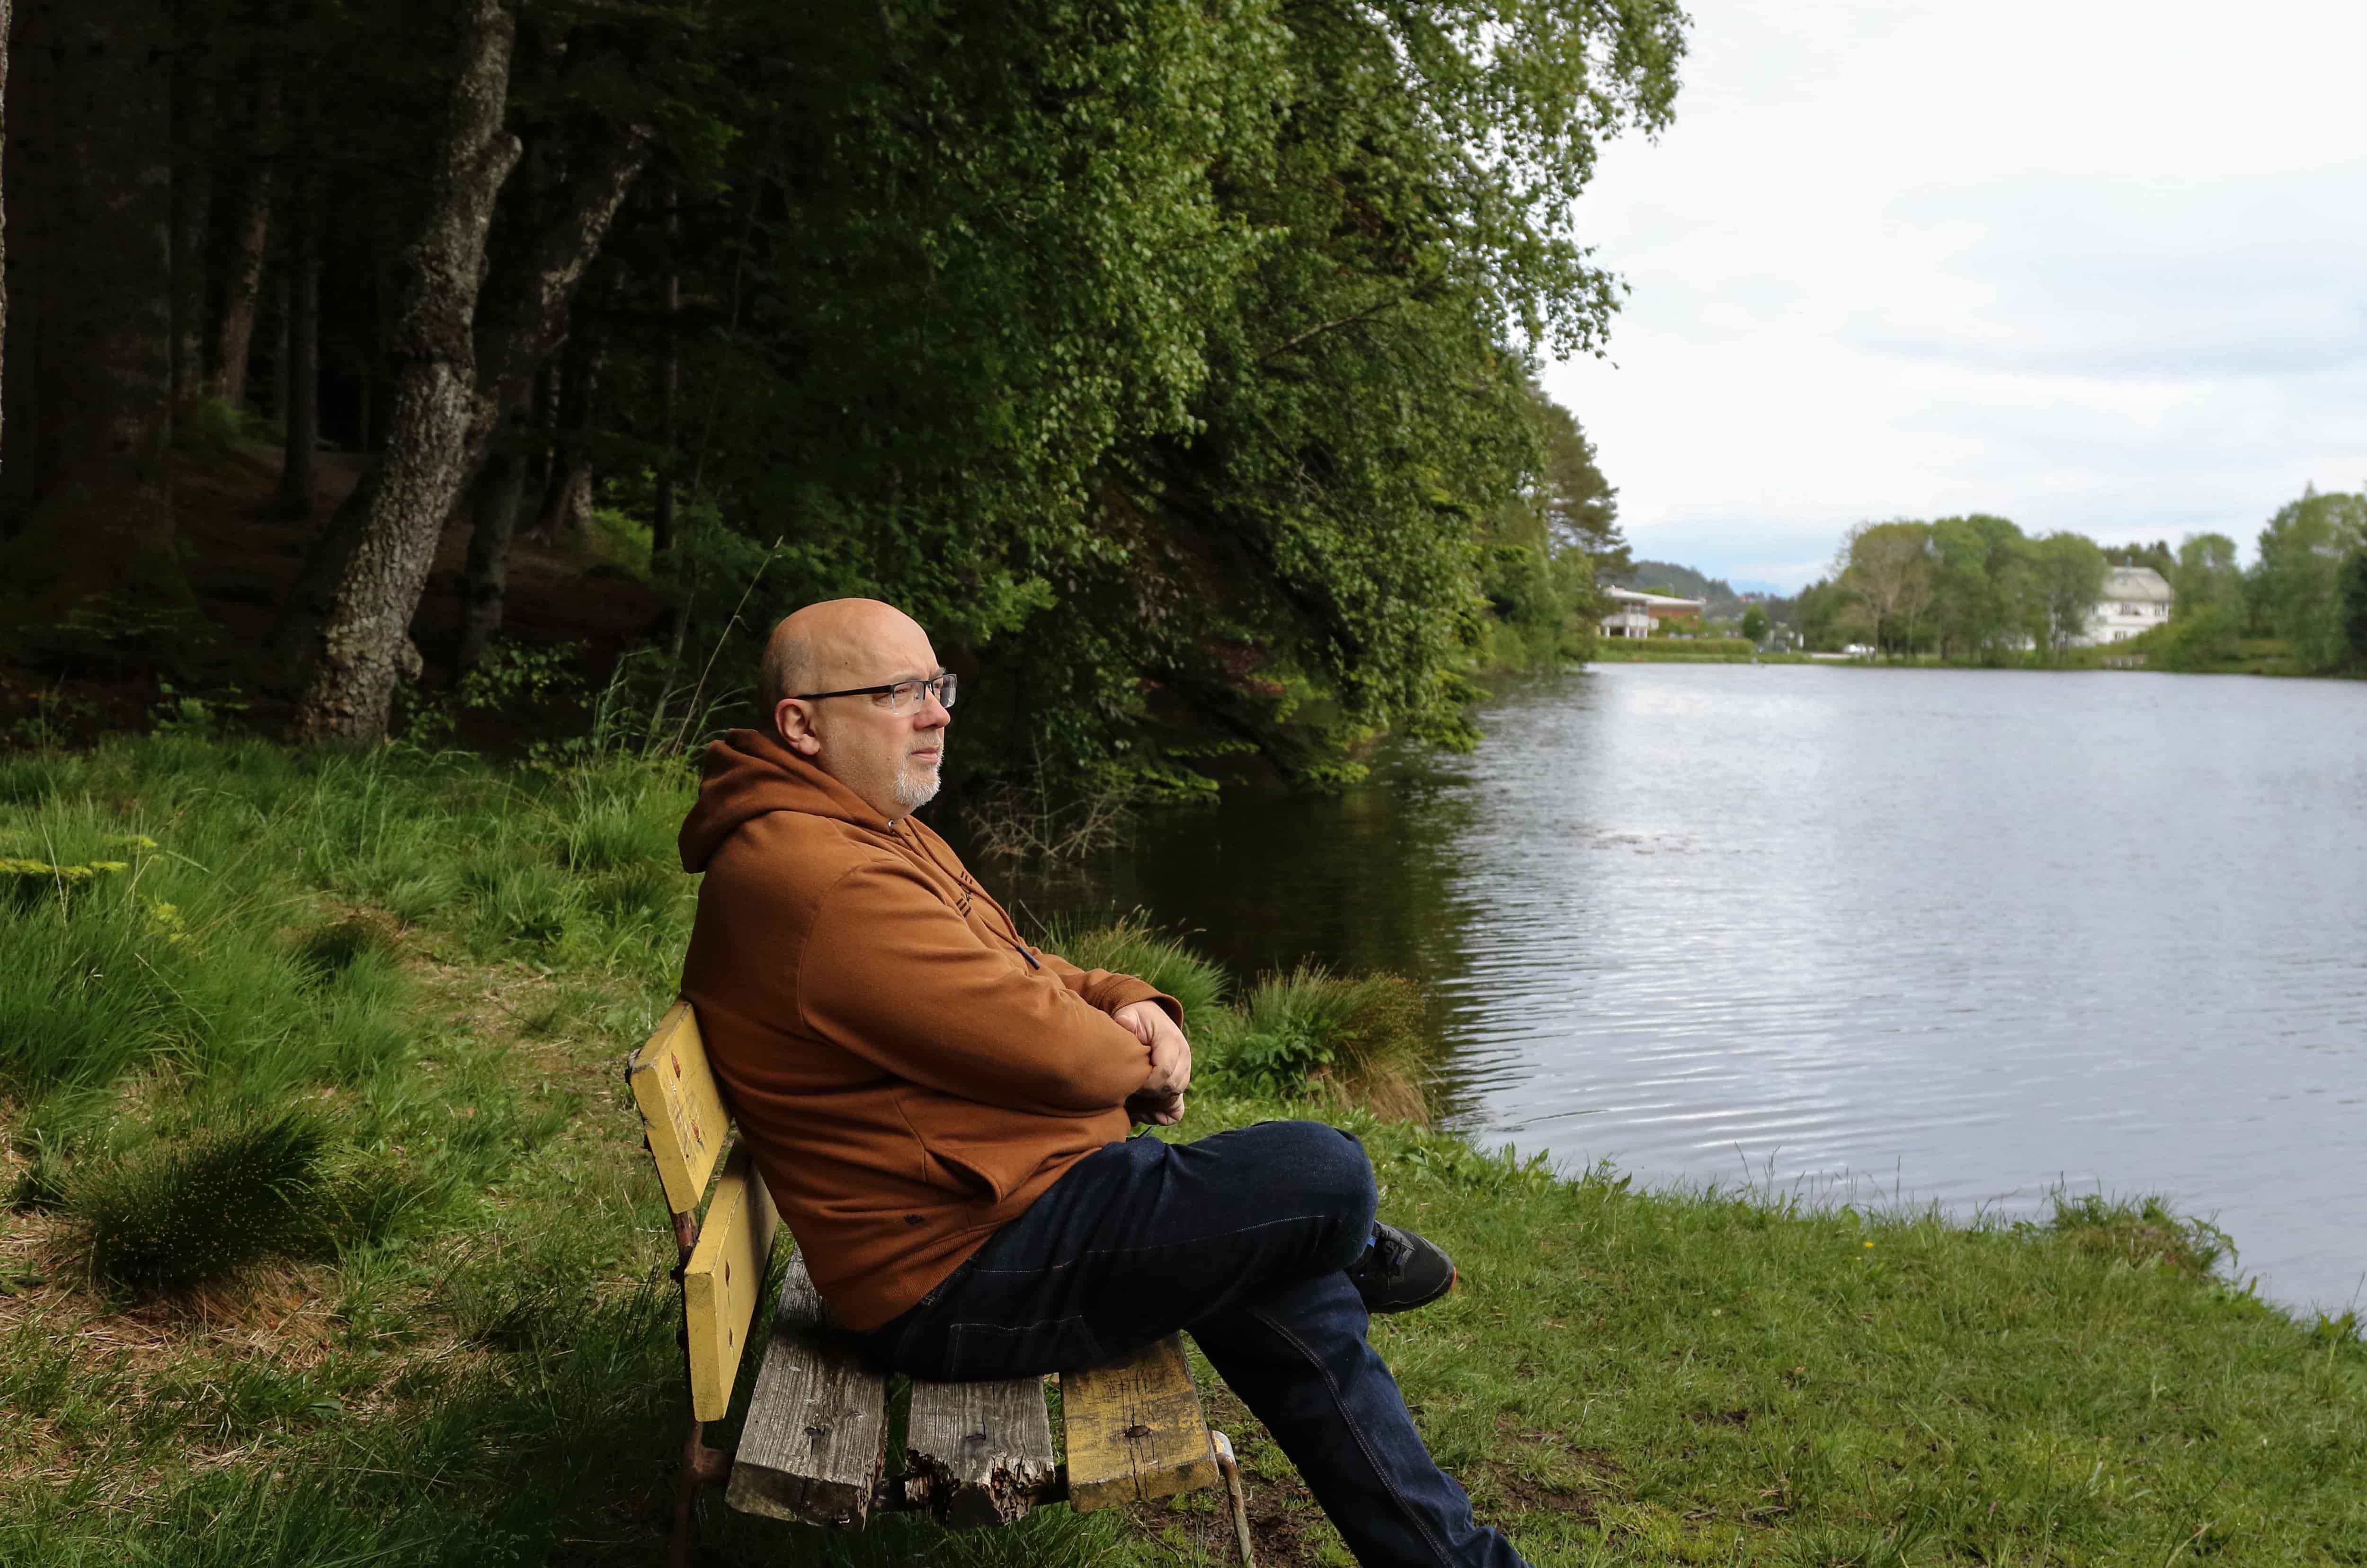 Arne sitter på en trebenk og ser utover et vann. Foto.